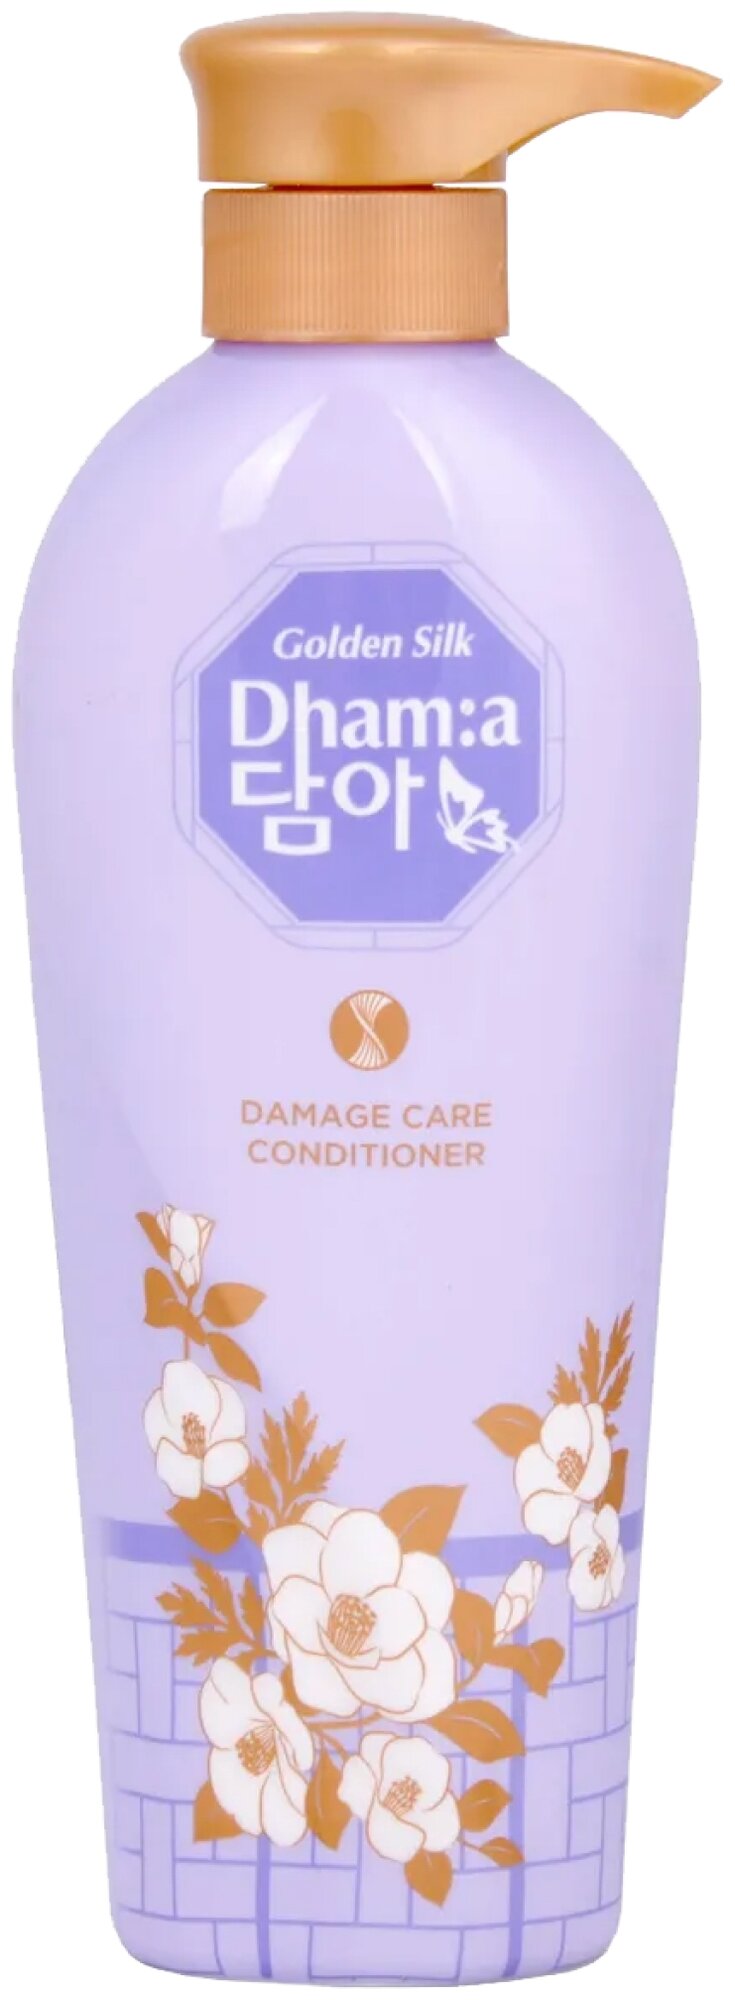 LION Dhama damage care conditioner Восстанавливающий кондиционер для тонких волос с цветочным аромат